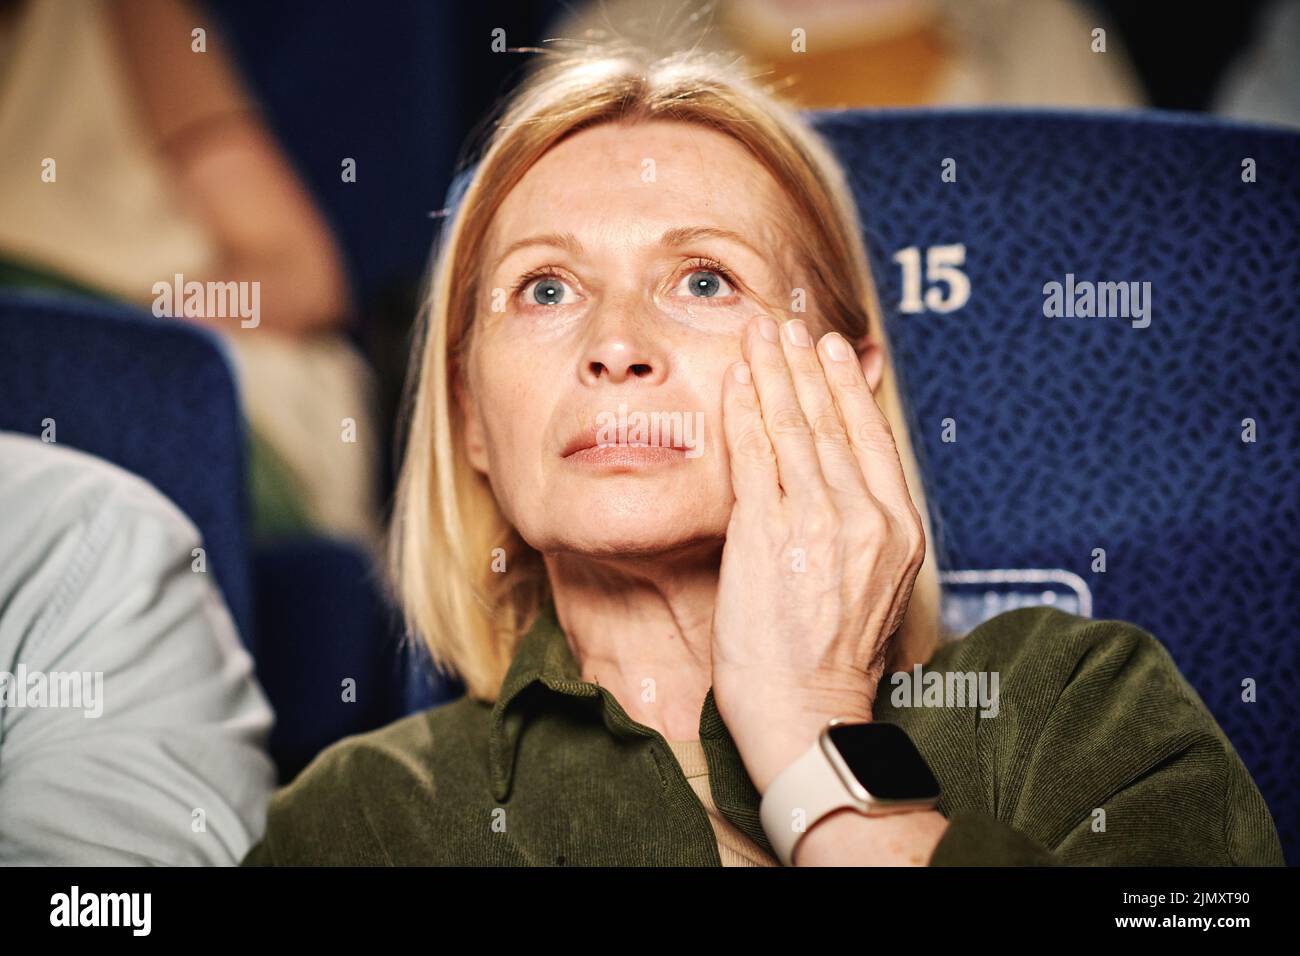 Retrato de una mujer caucásica adulta adulta viendo una película de tragedia en el cine limpiando la mano Foto de stock